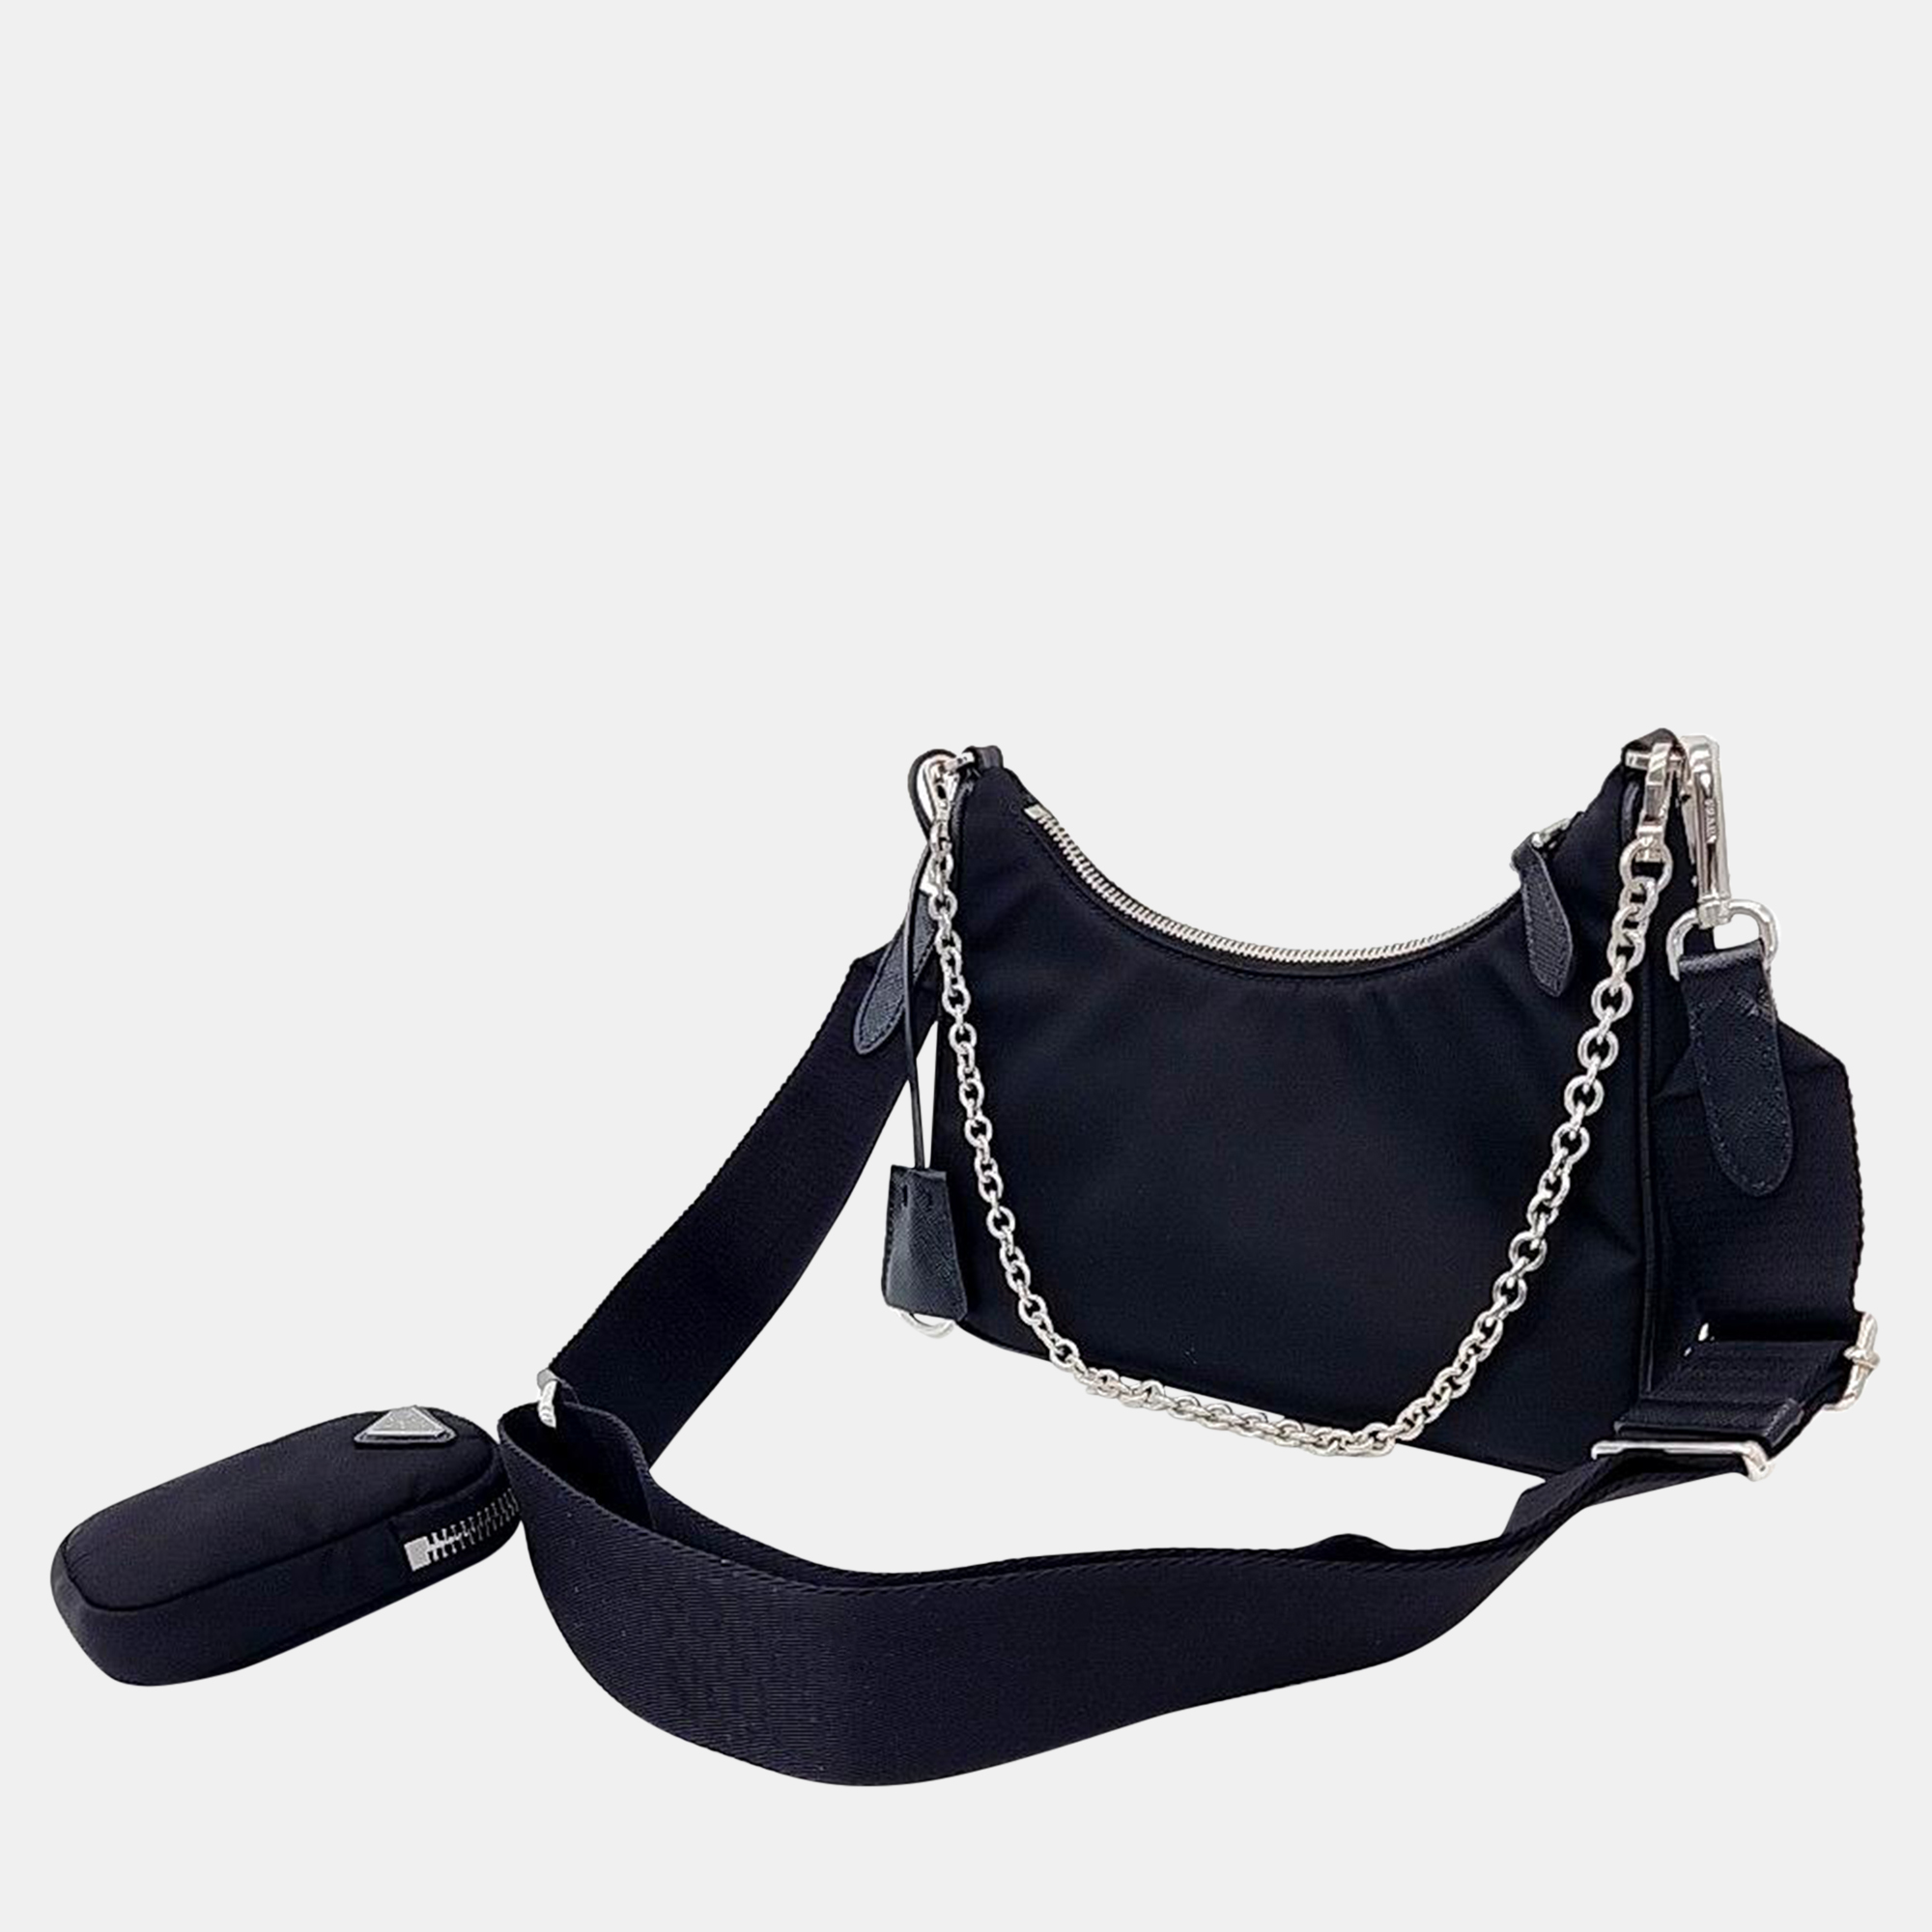 

Prada Nylon Tessuto Chain Strap Hobo Bag, Black